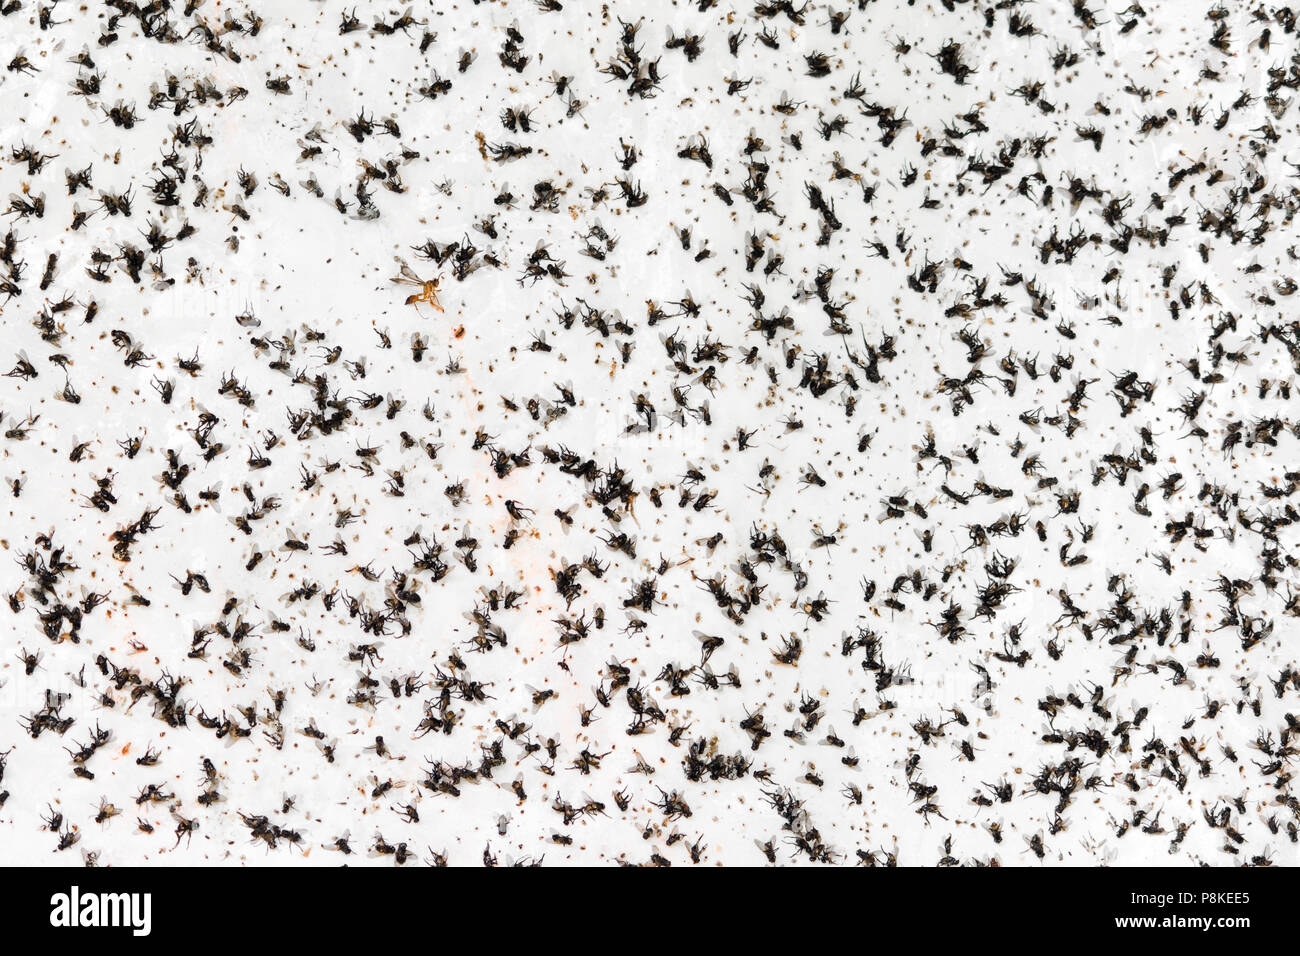 Una massa di insetti volanti sono intrappolati su un adesivo bianco parete. Foto Stock